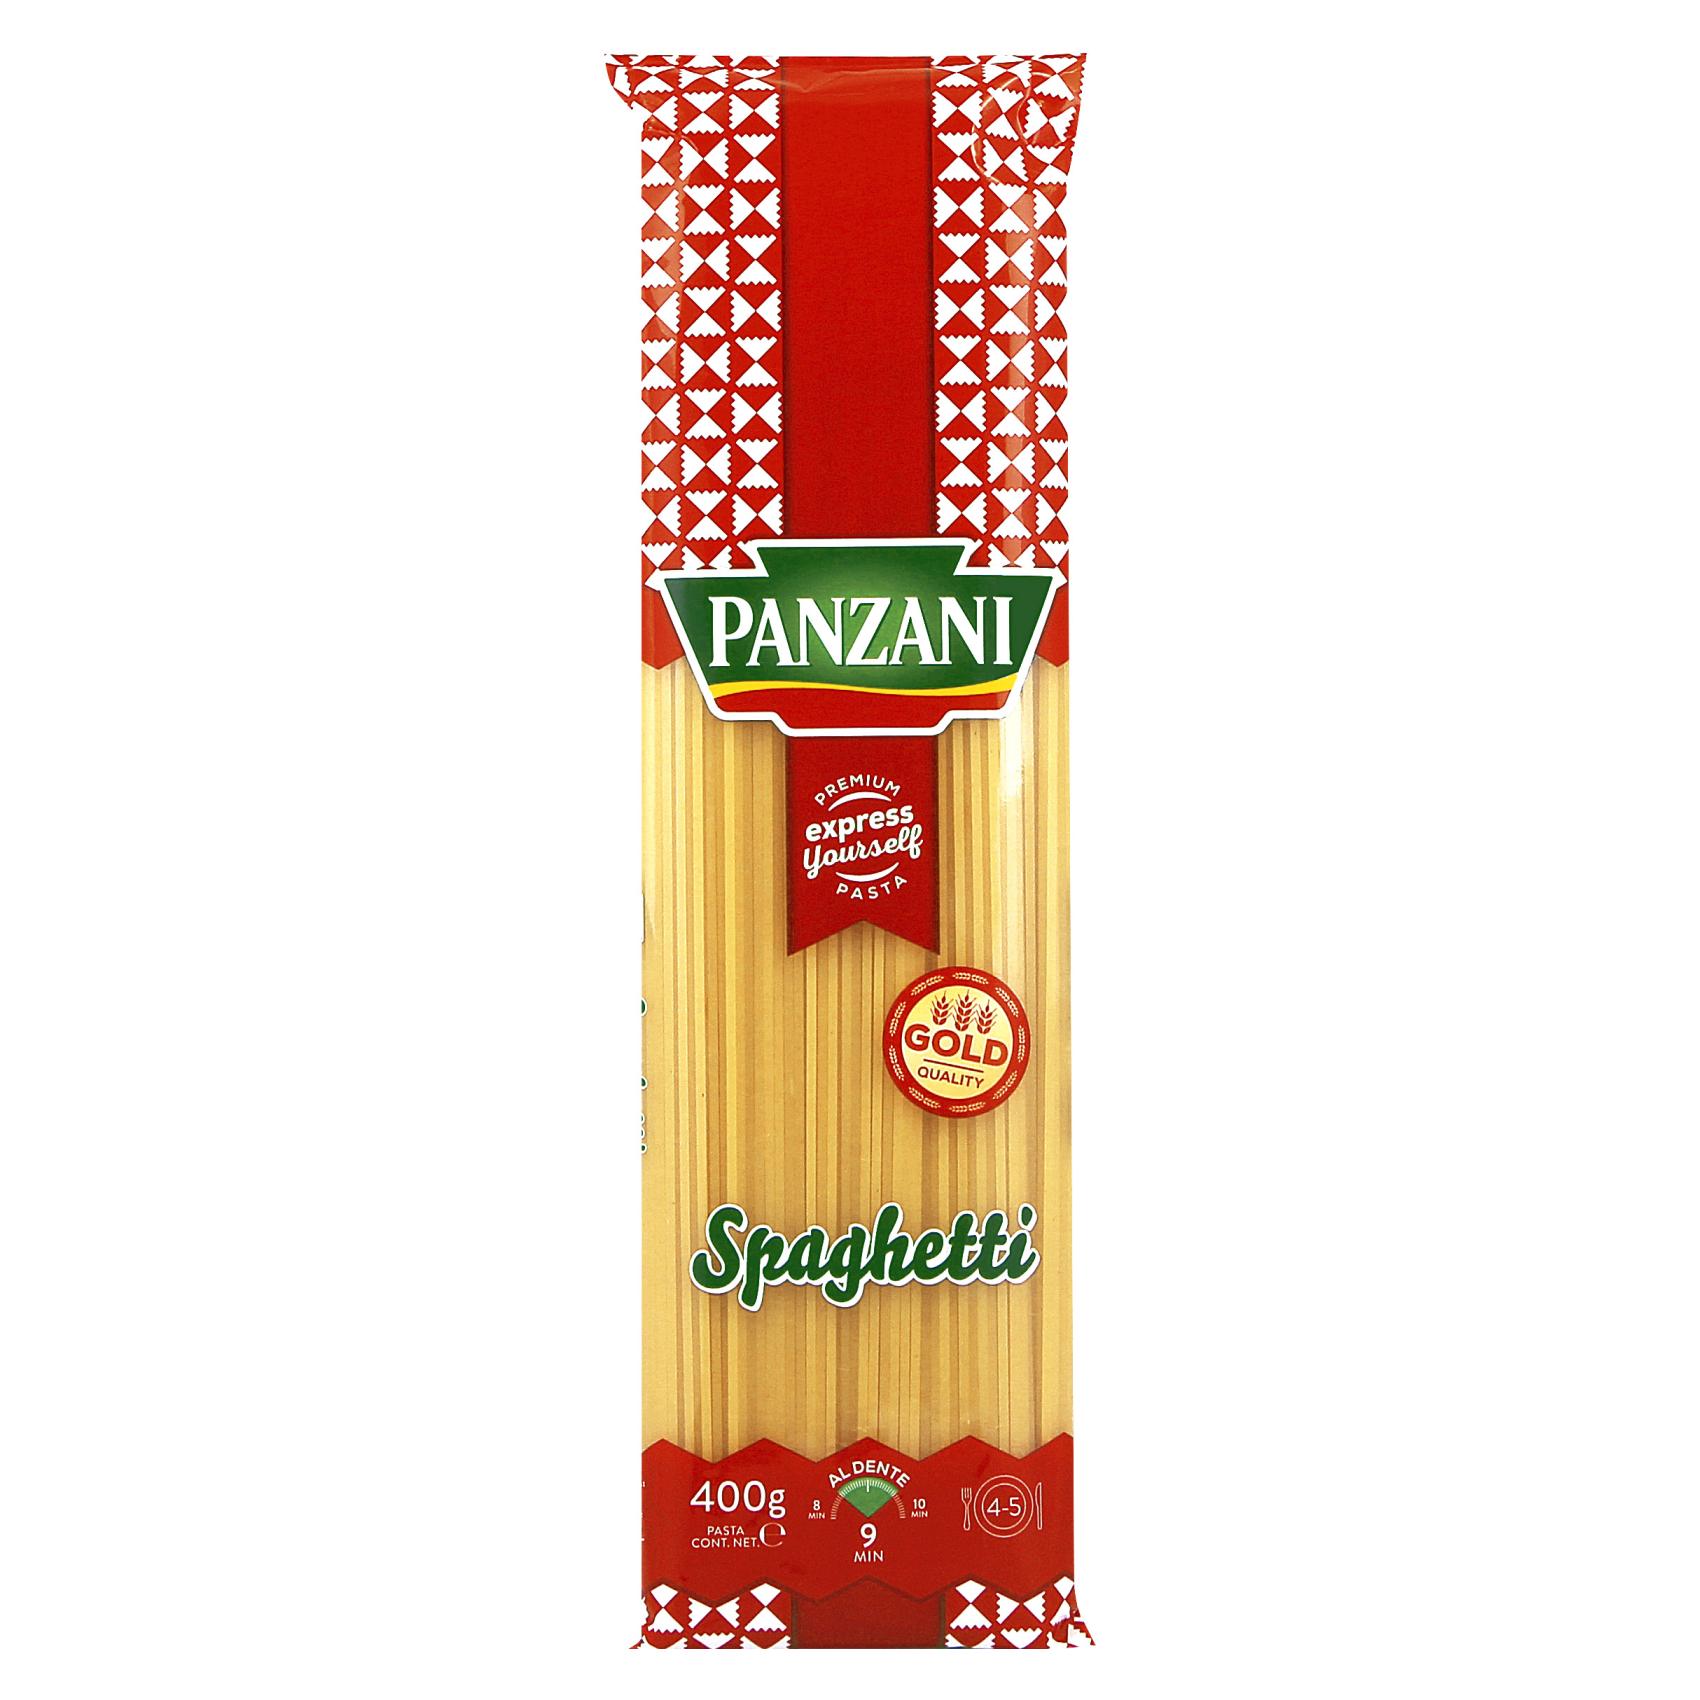 Panzani Spaghetti 400g